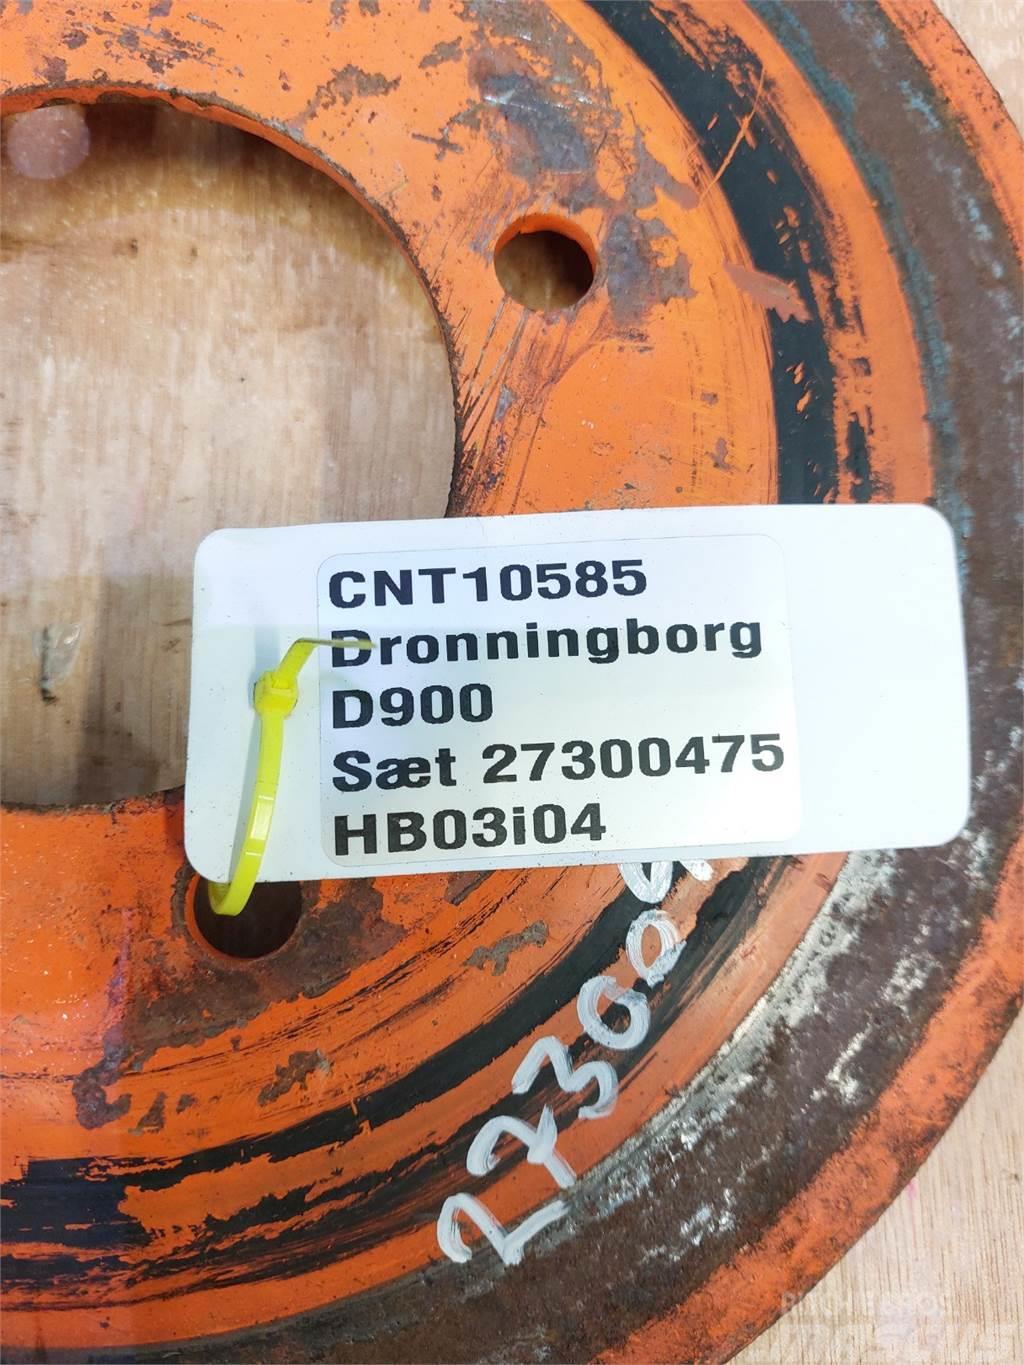 Dronningborg D900 Ďalšie poľnohospodárske stroje